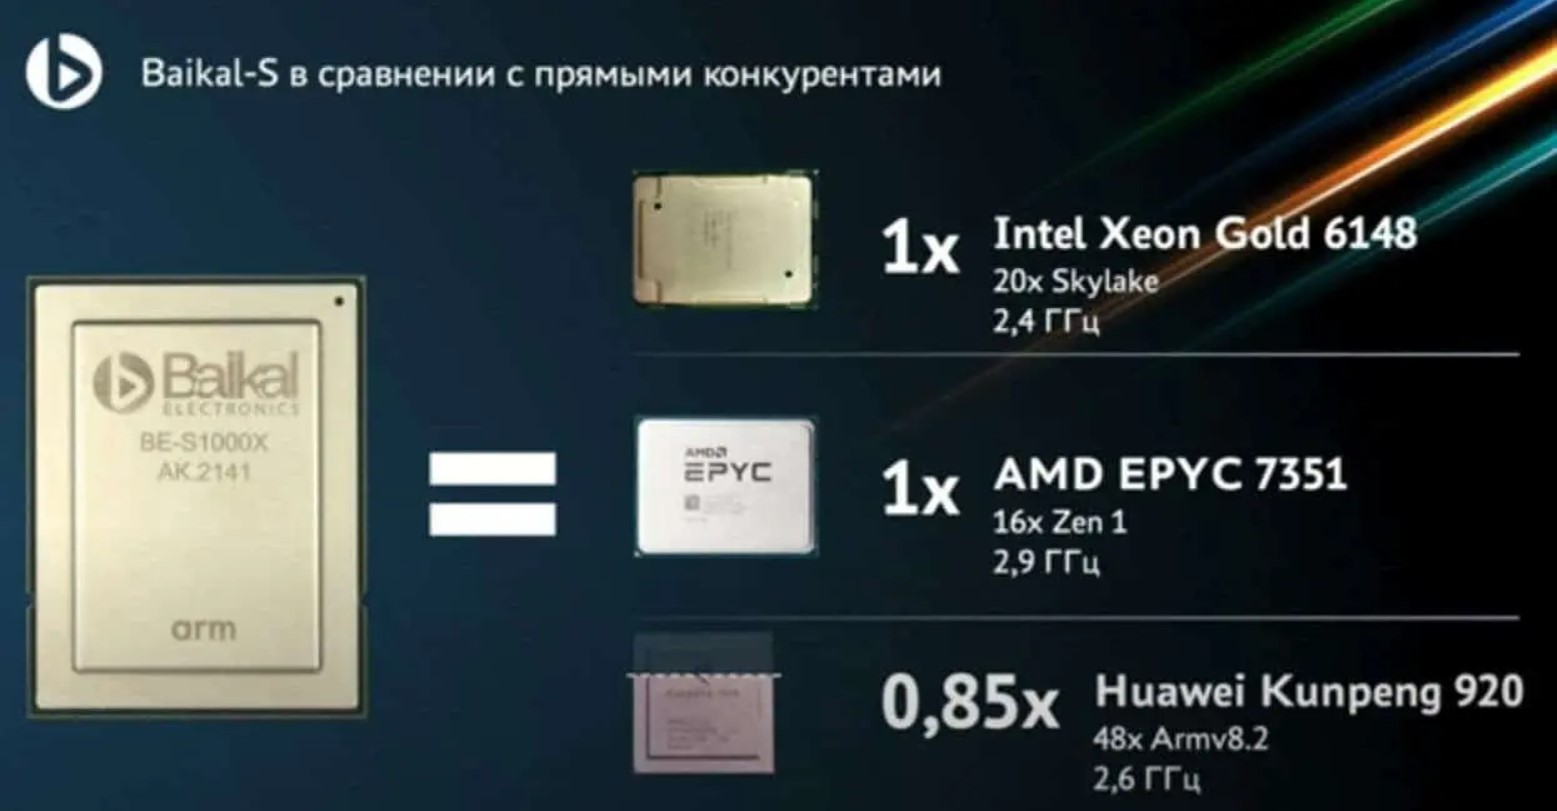 Procesor Baikal-S